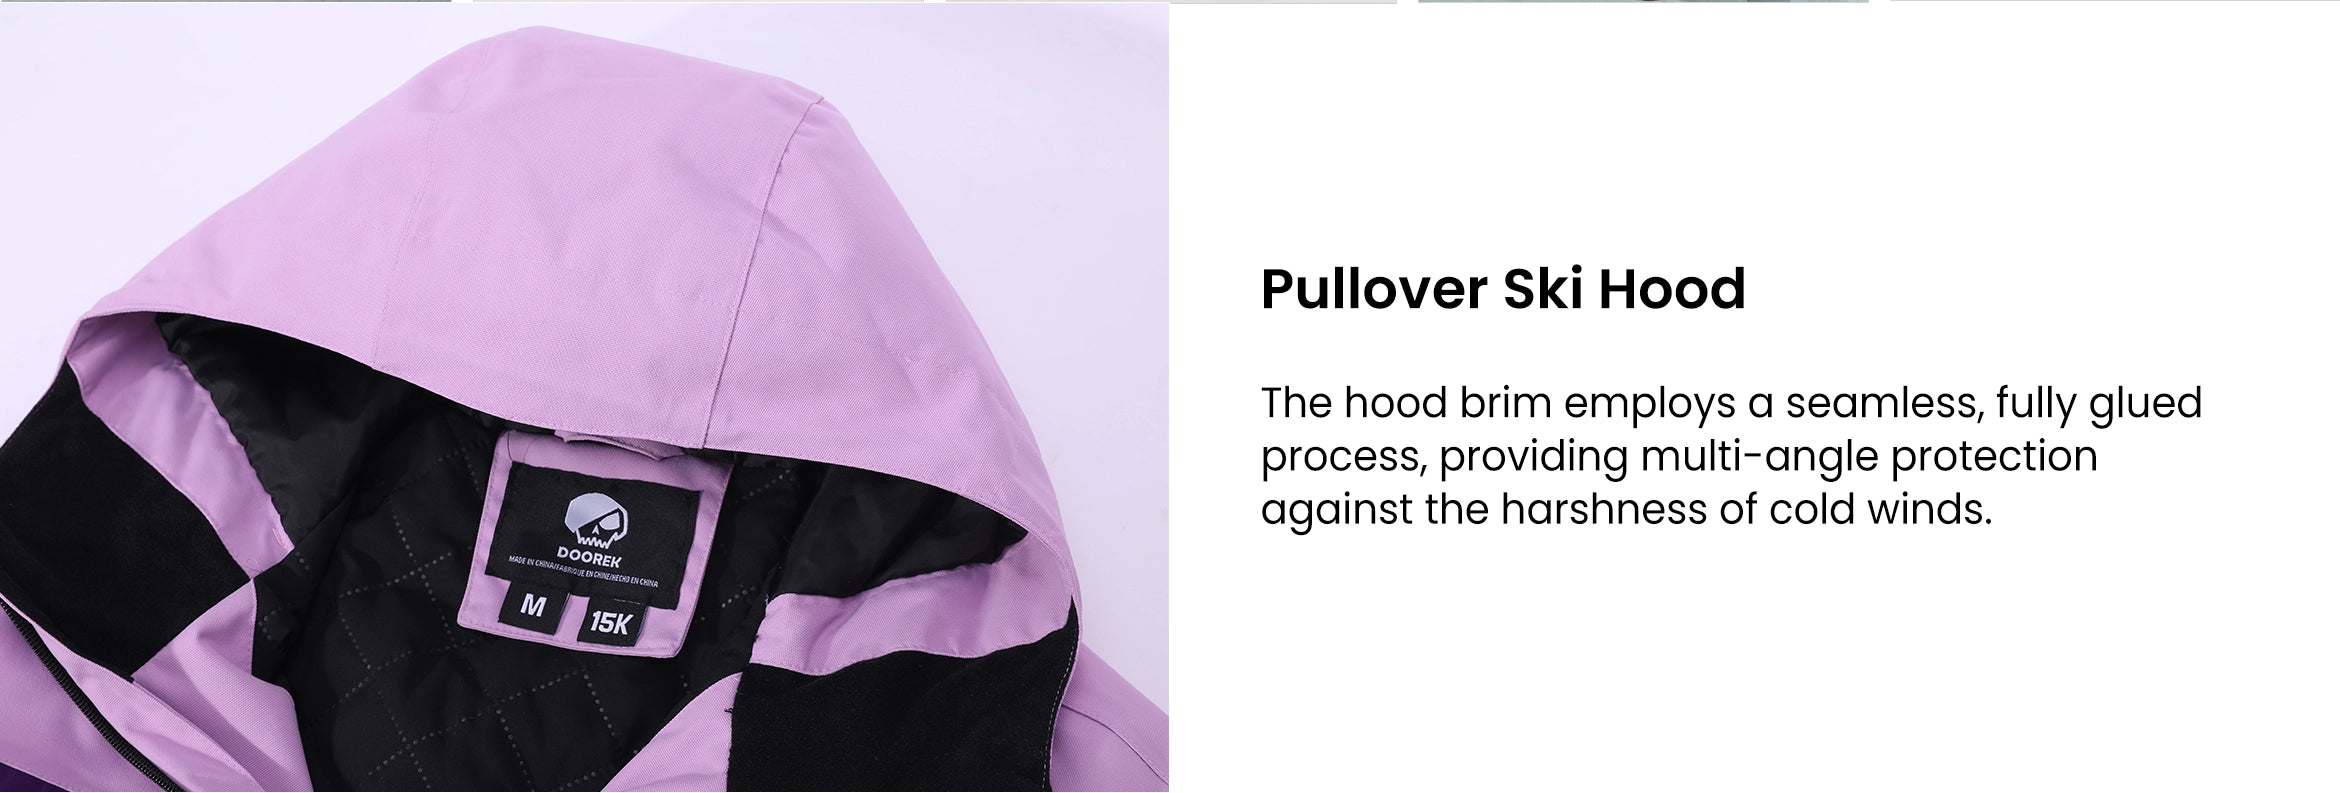 2. Pullover Ski Hood